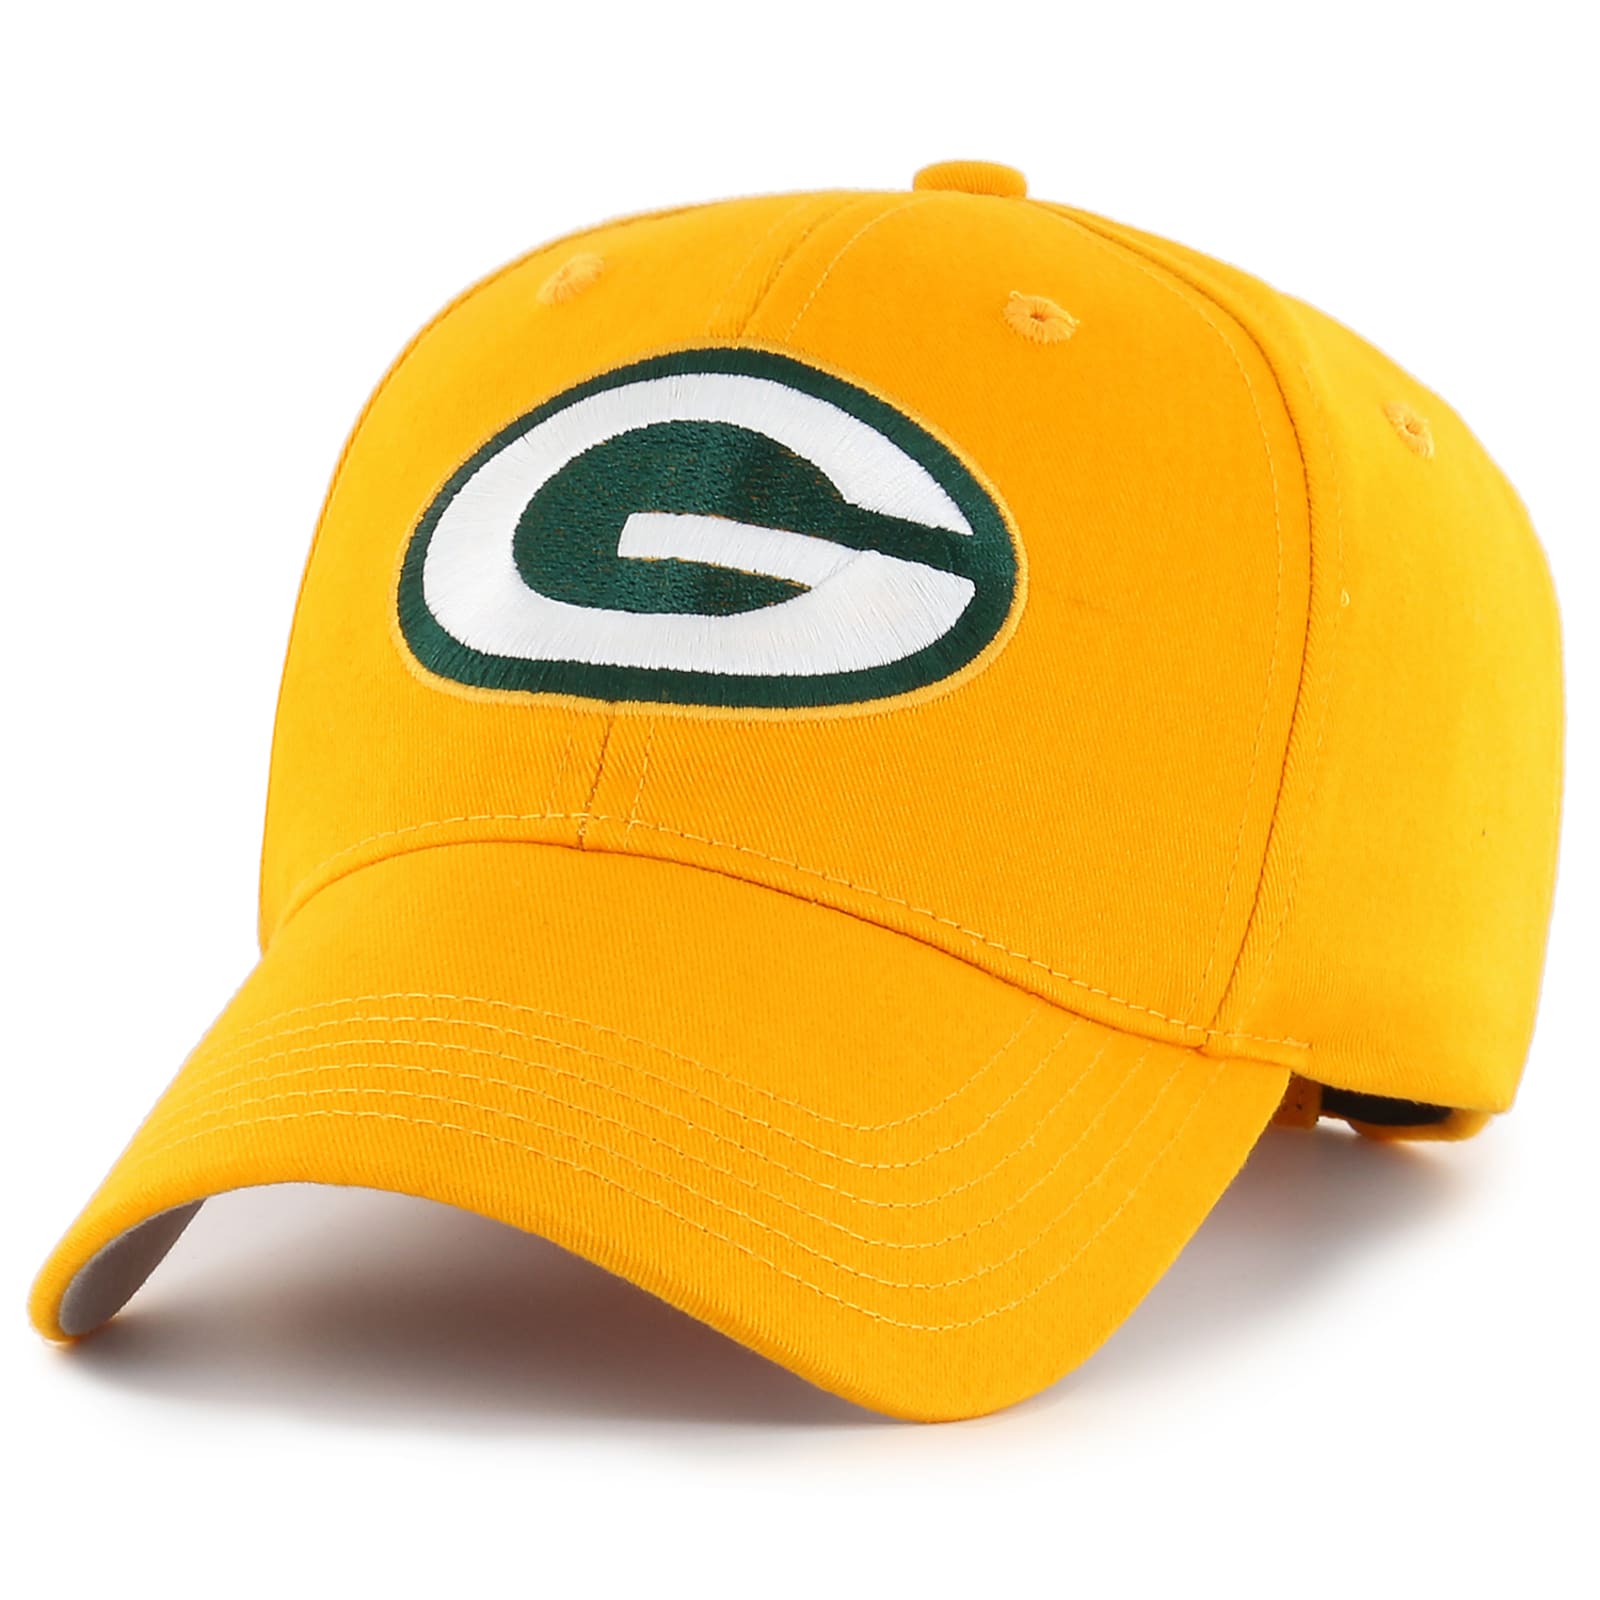 Adult Green Bay Packers Gold Mass Basic Team Logo NFL Cap at Fleet